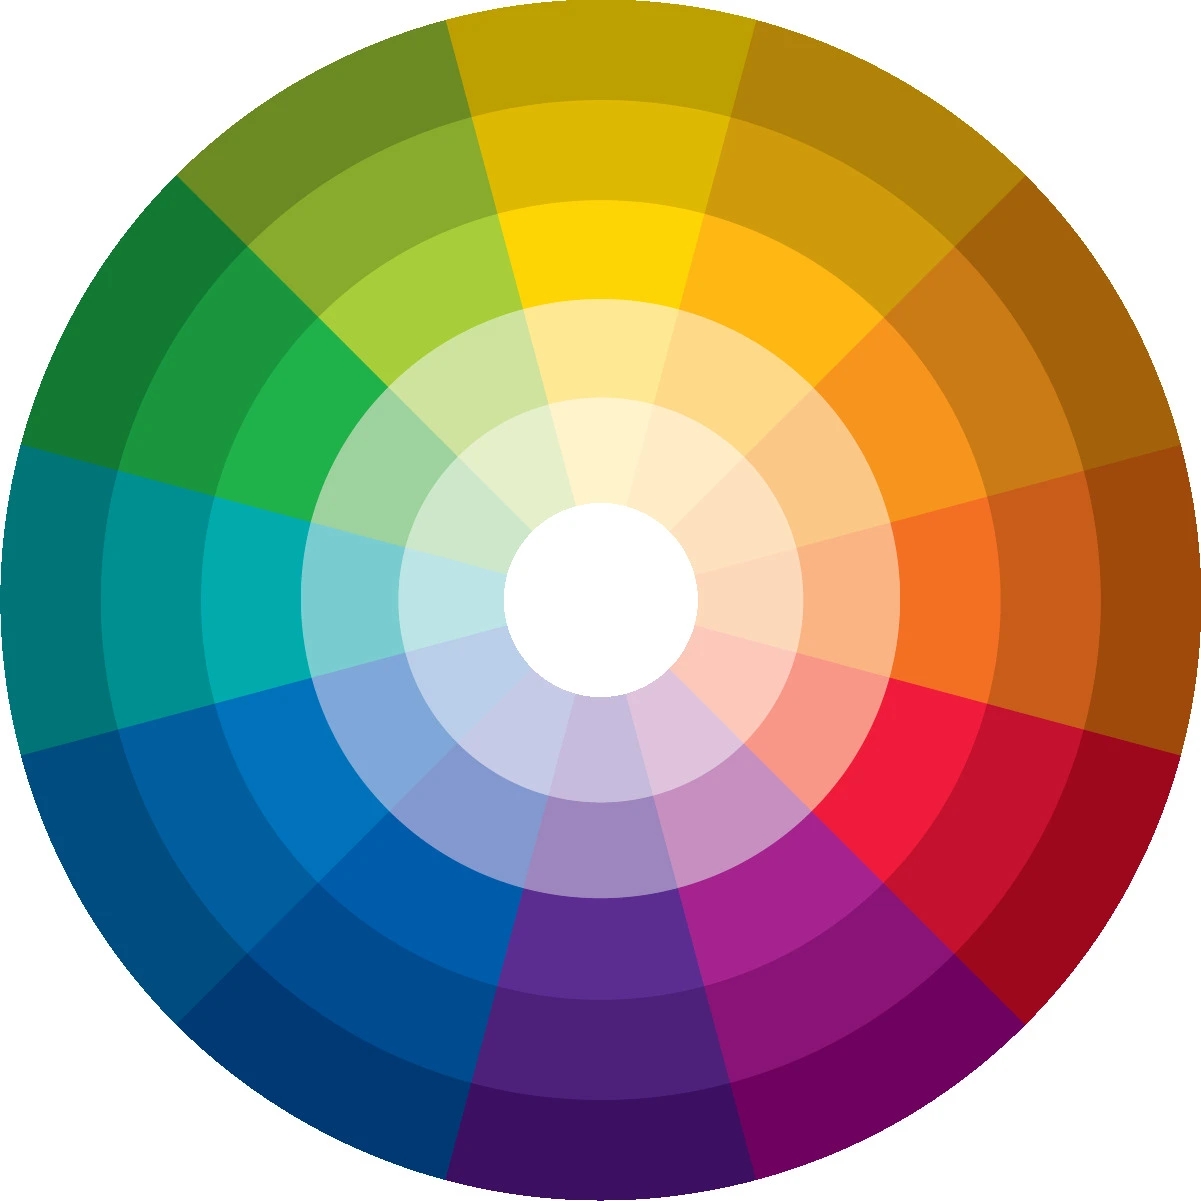 Já sabe usar o círculo cromático para escolher cores?